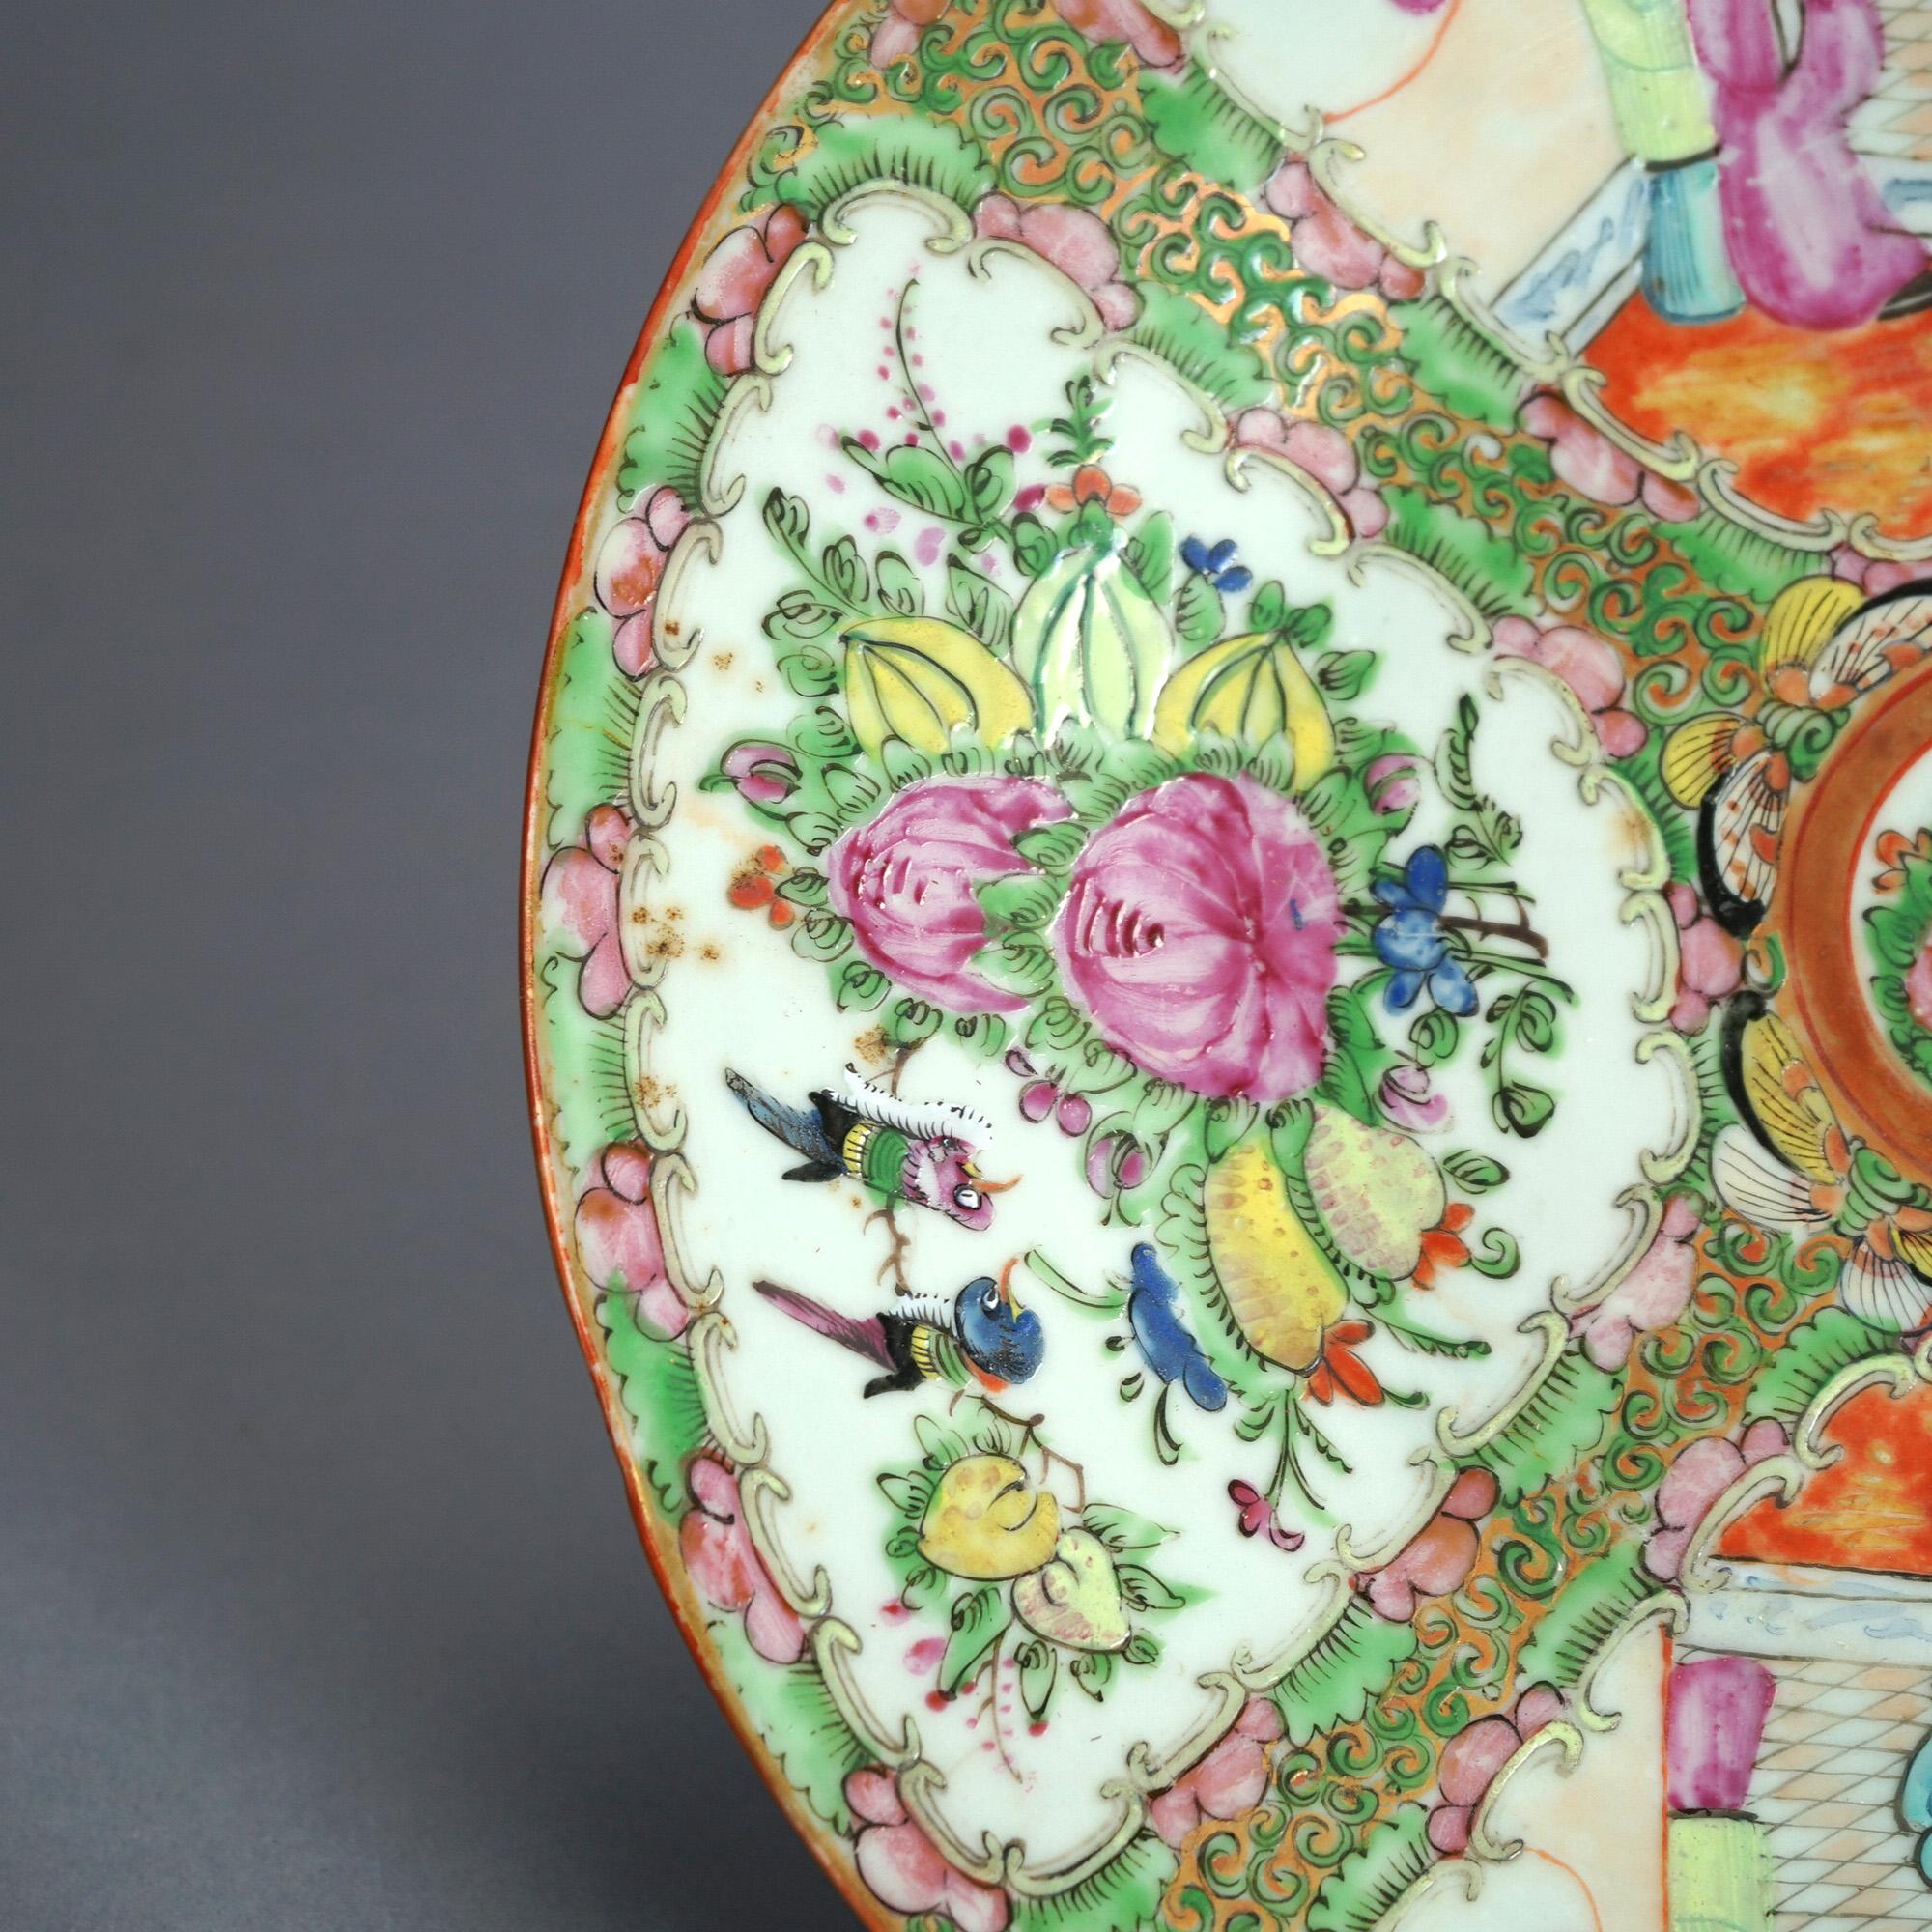 Antike chinesische Rose Medaillon Porzellan Charger mit Reserven mit Gärten und Genre-Szenen C1900

Maße - 1,5 